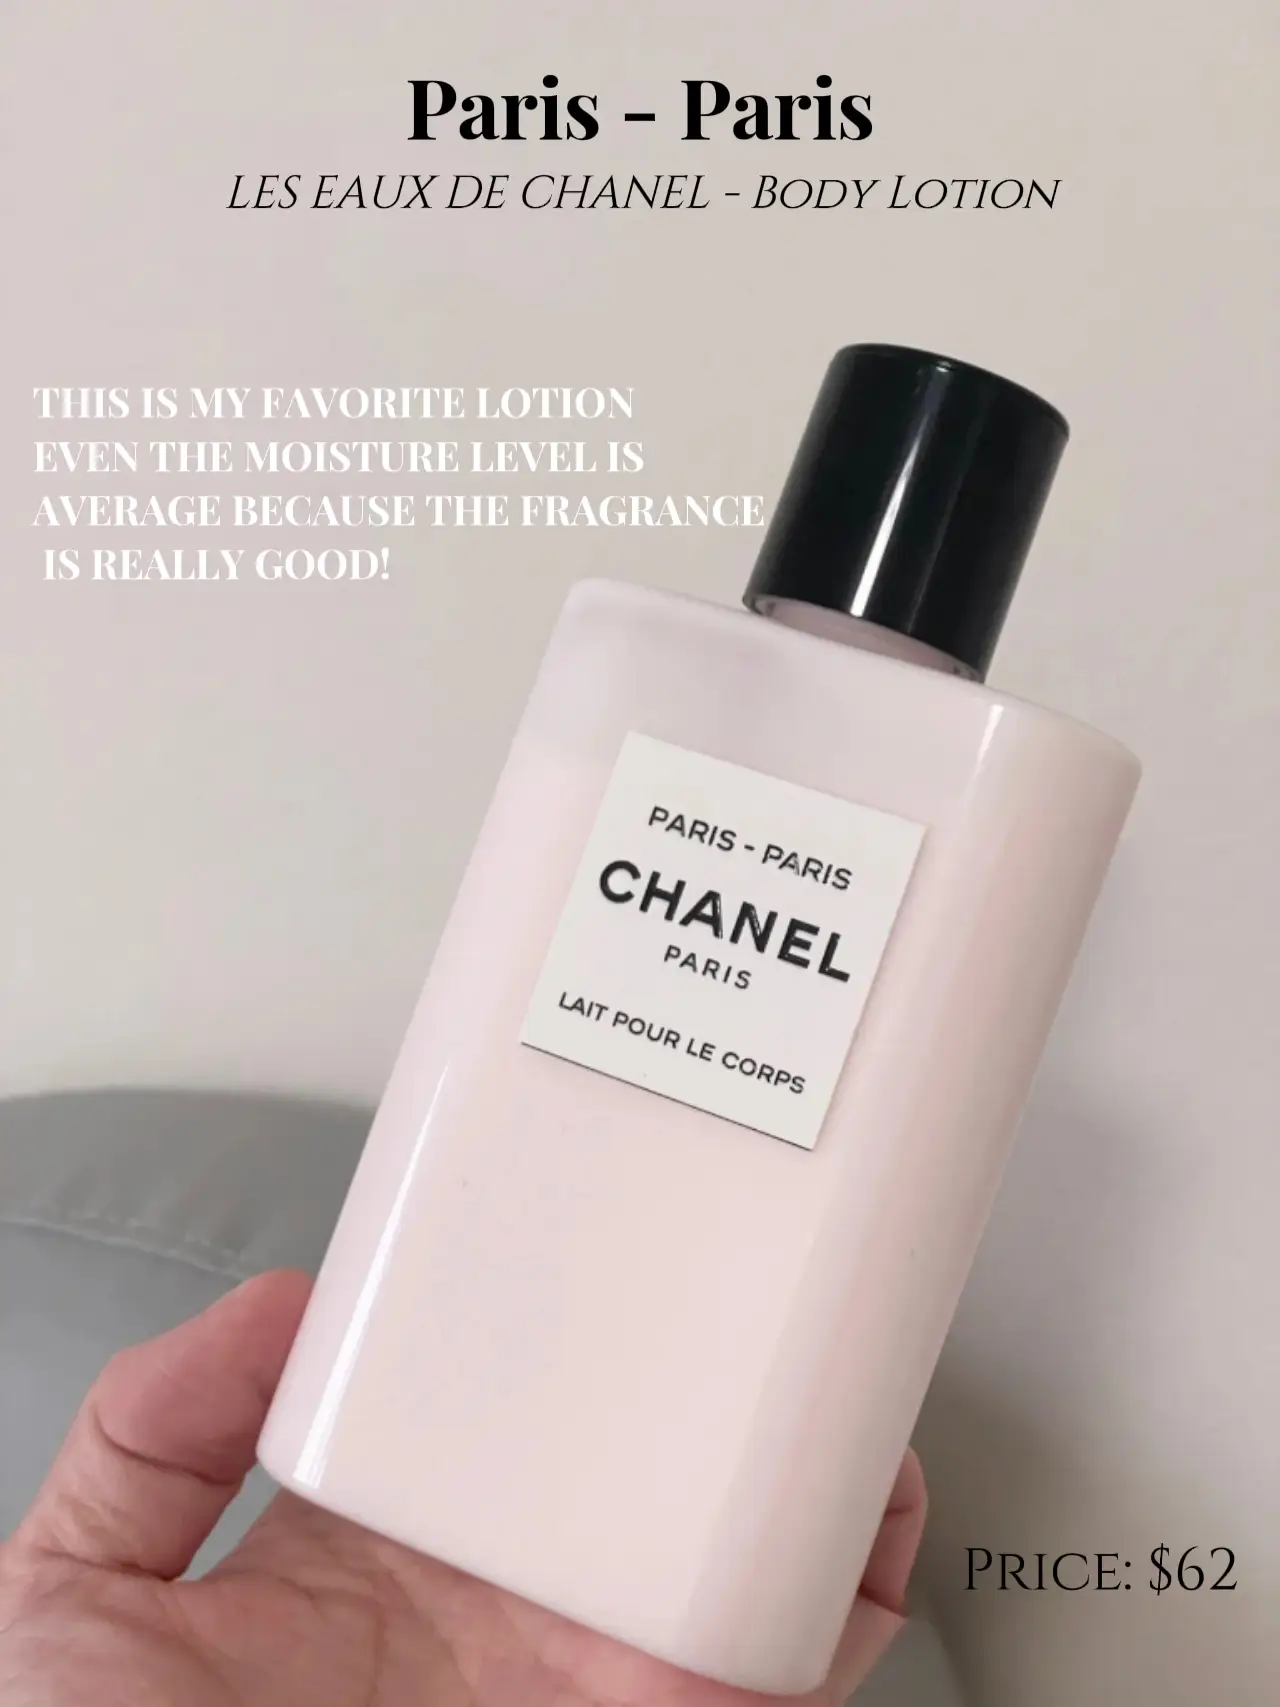 Chanel Paris Paris lotion